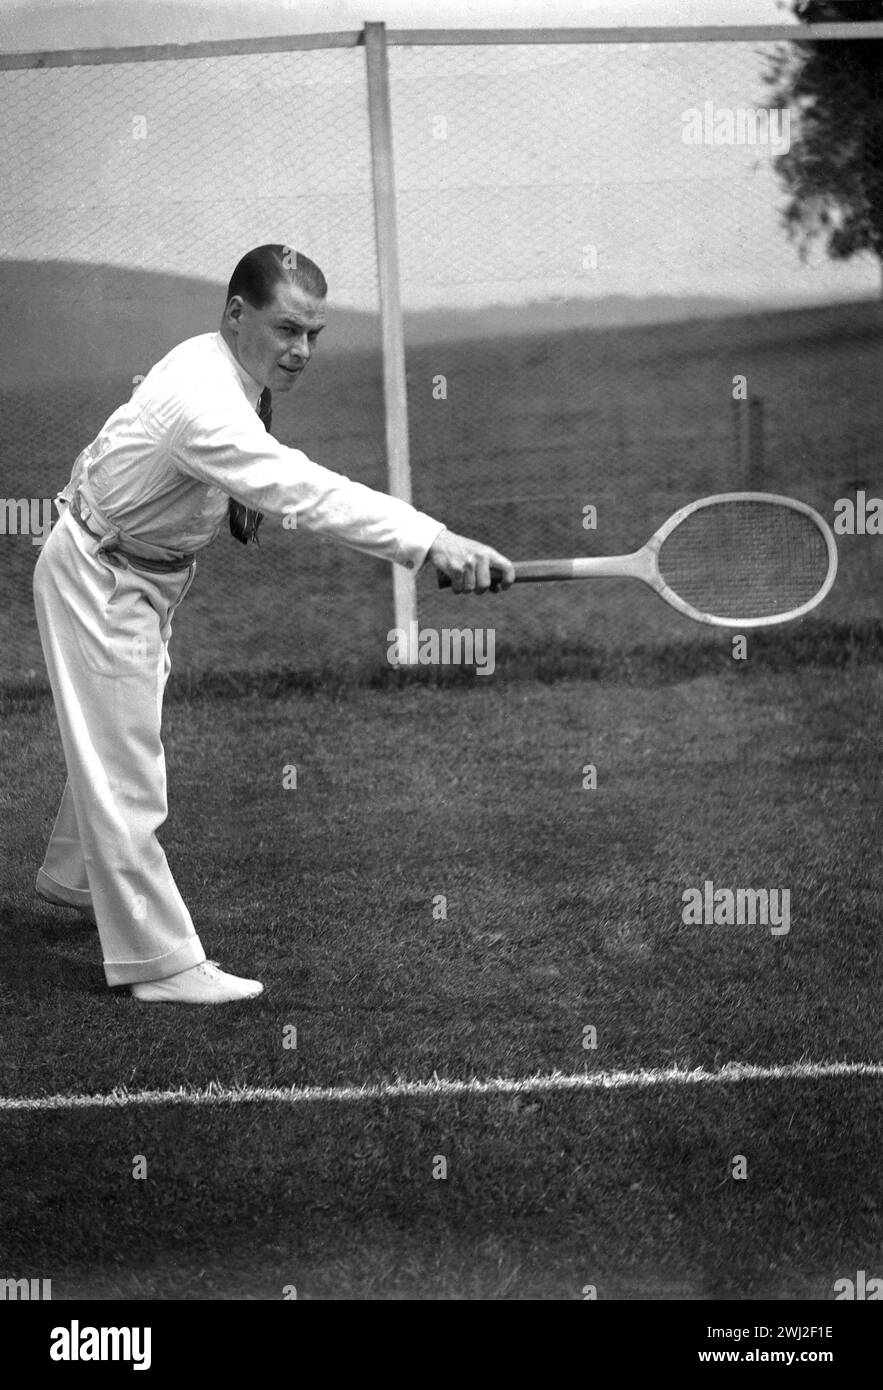 1920er Jahre, historisch, draußen auf einem Rasen-Tennisplatz, ein Gentleman-Tennisspieler in der stilvollen Sportkleidung der Epoche - lange Flanellhose, Langarmshirt und Krawatte - spielt eine Rückhand mit einem traditionellen Holzschläger, England, Großbritannien. Stockfoto